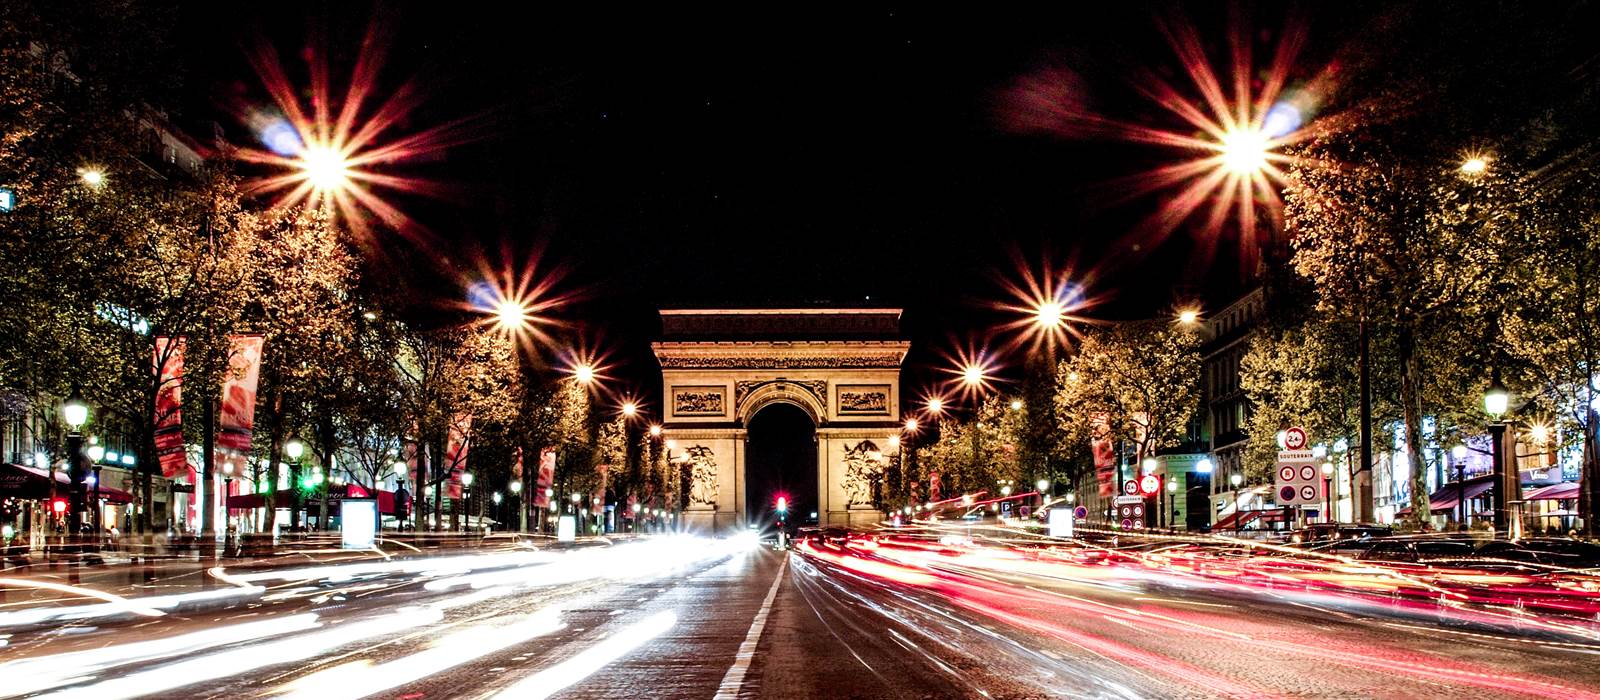 Les Champs Elysees Paris,photos and guide